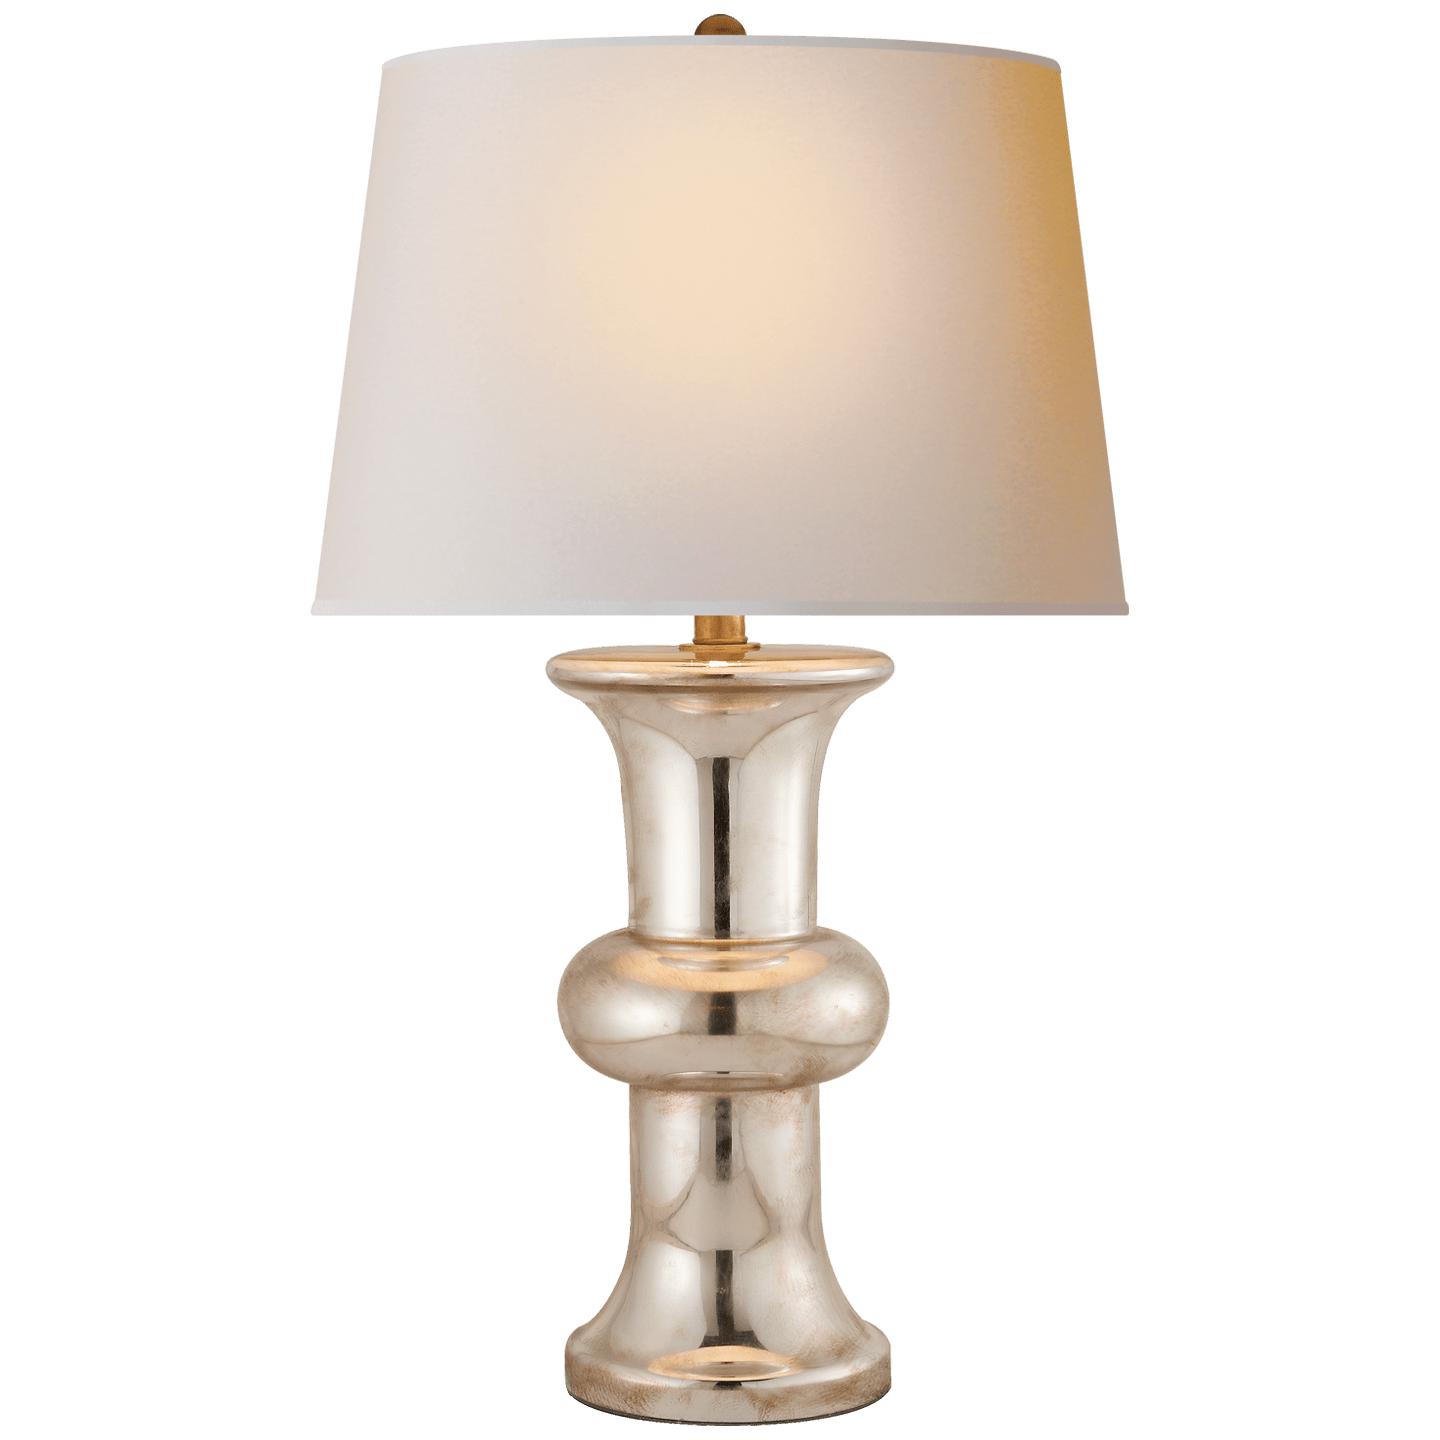 Купить Настольная лампа Bull Nose Cylinder Table Lamp в интернет-магазине roooms.ru